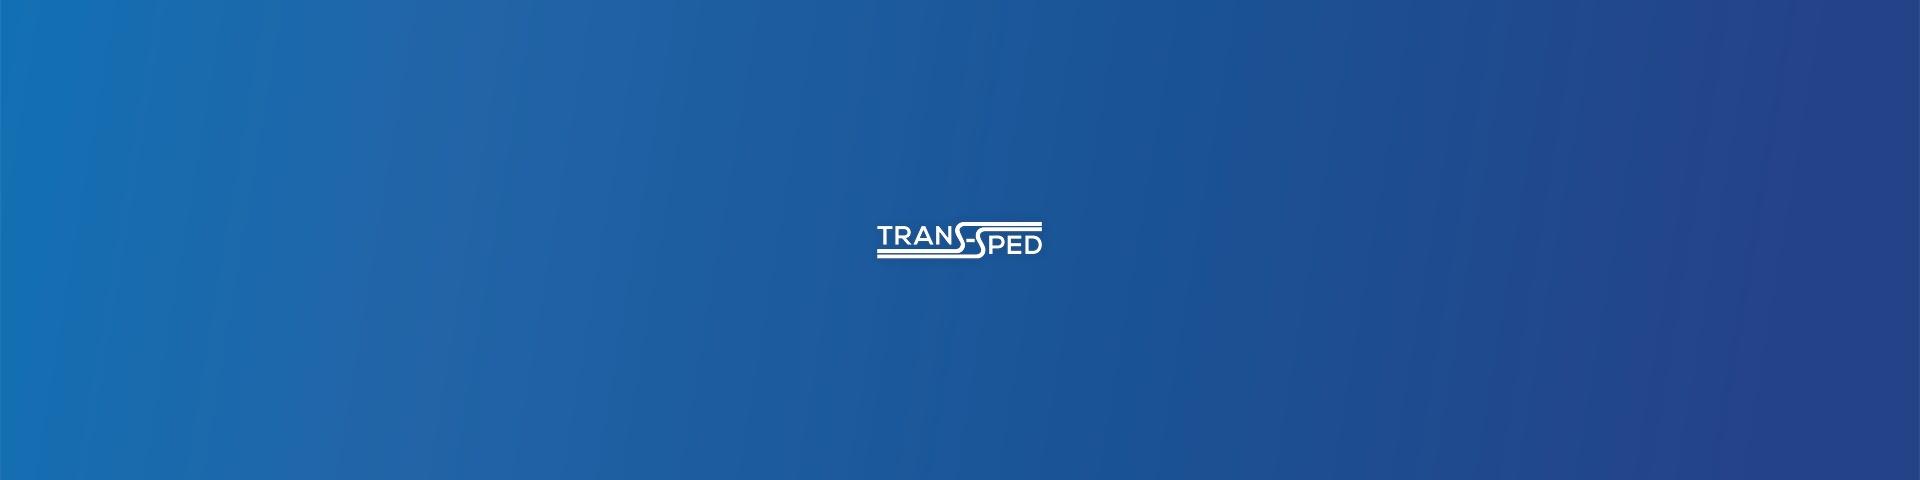 TRANS-SPED ERWEITERT PORTFOLIO:  STÜCKGUT-TRANSPORTE NUN AUCH IN DIE TÜRKEI UND NACH SKANDINAVIEN